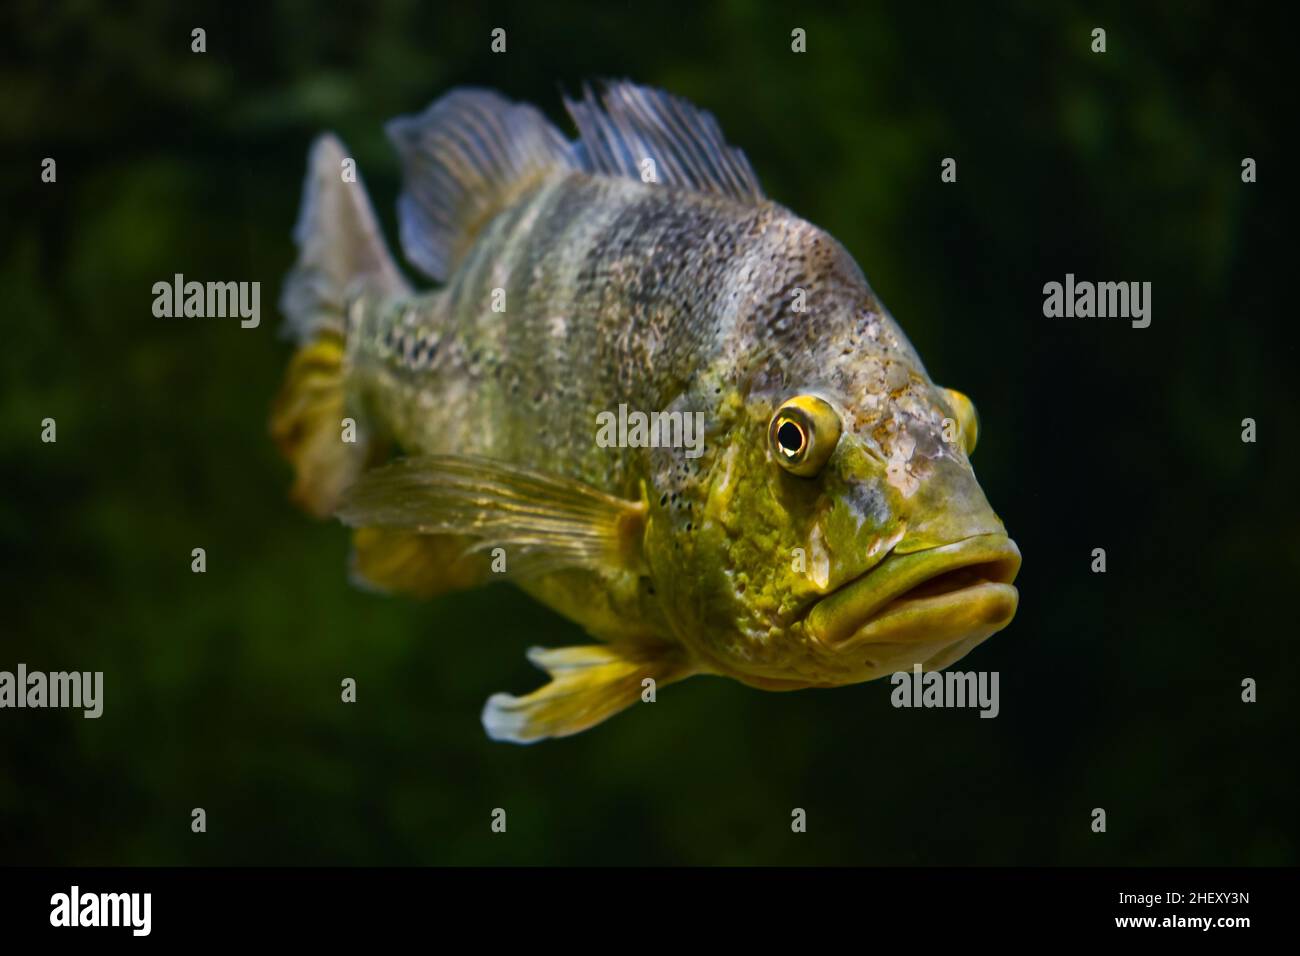 Der Schmetterling Pfau Bass Fisch schwimmt im Wasser. Cichla ocellaris Orinoco Pfauenbarsch. Stockfoto